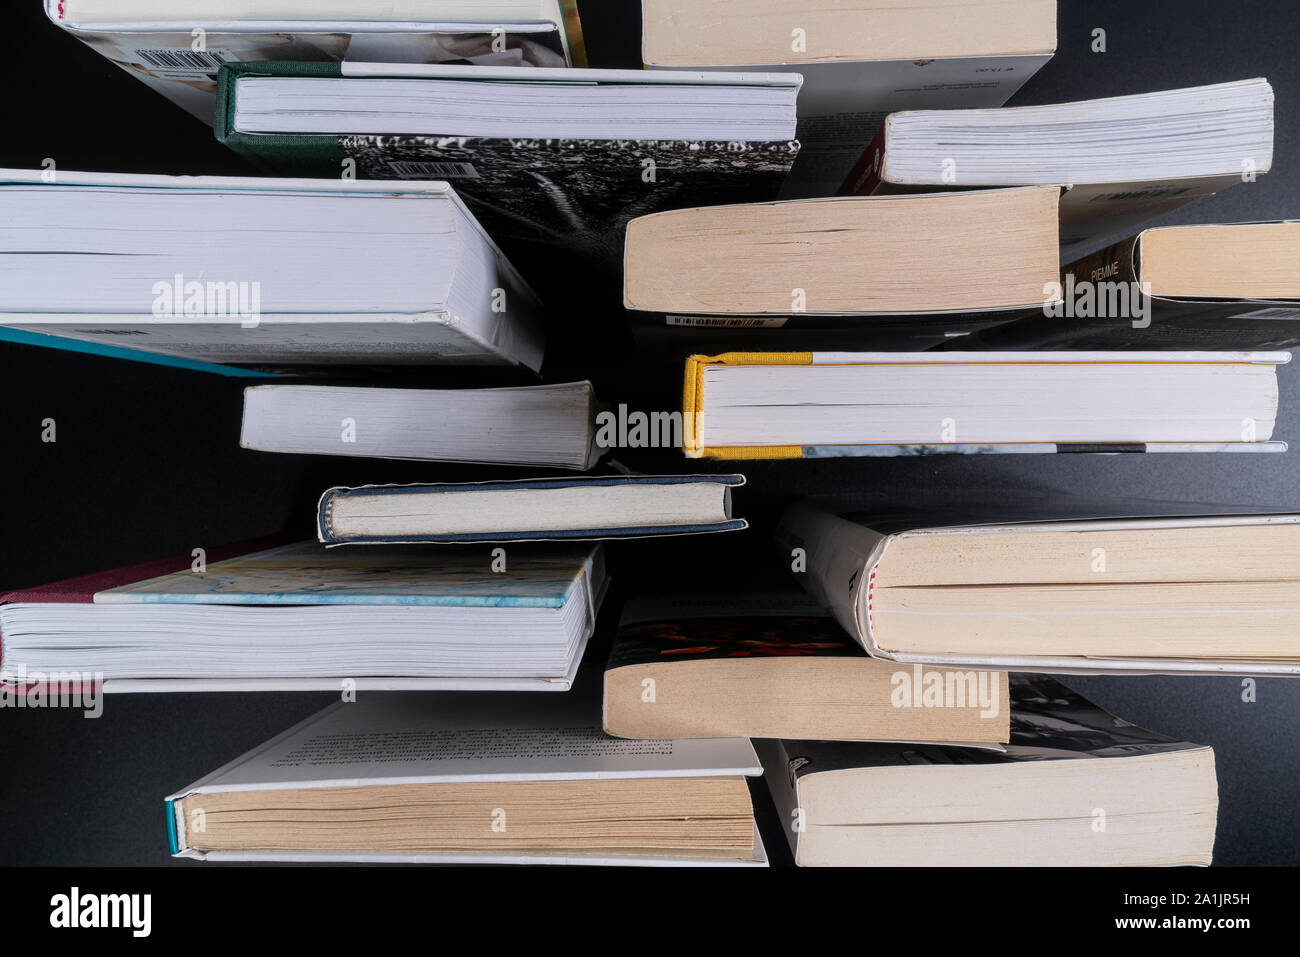 Una serie di libri su una superficie nera visto da sopra Foto Stock